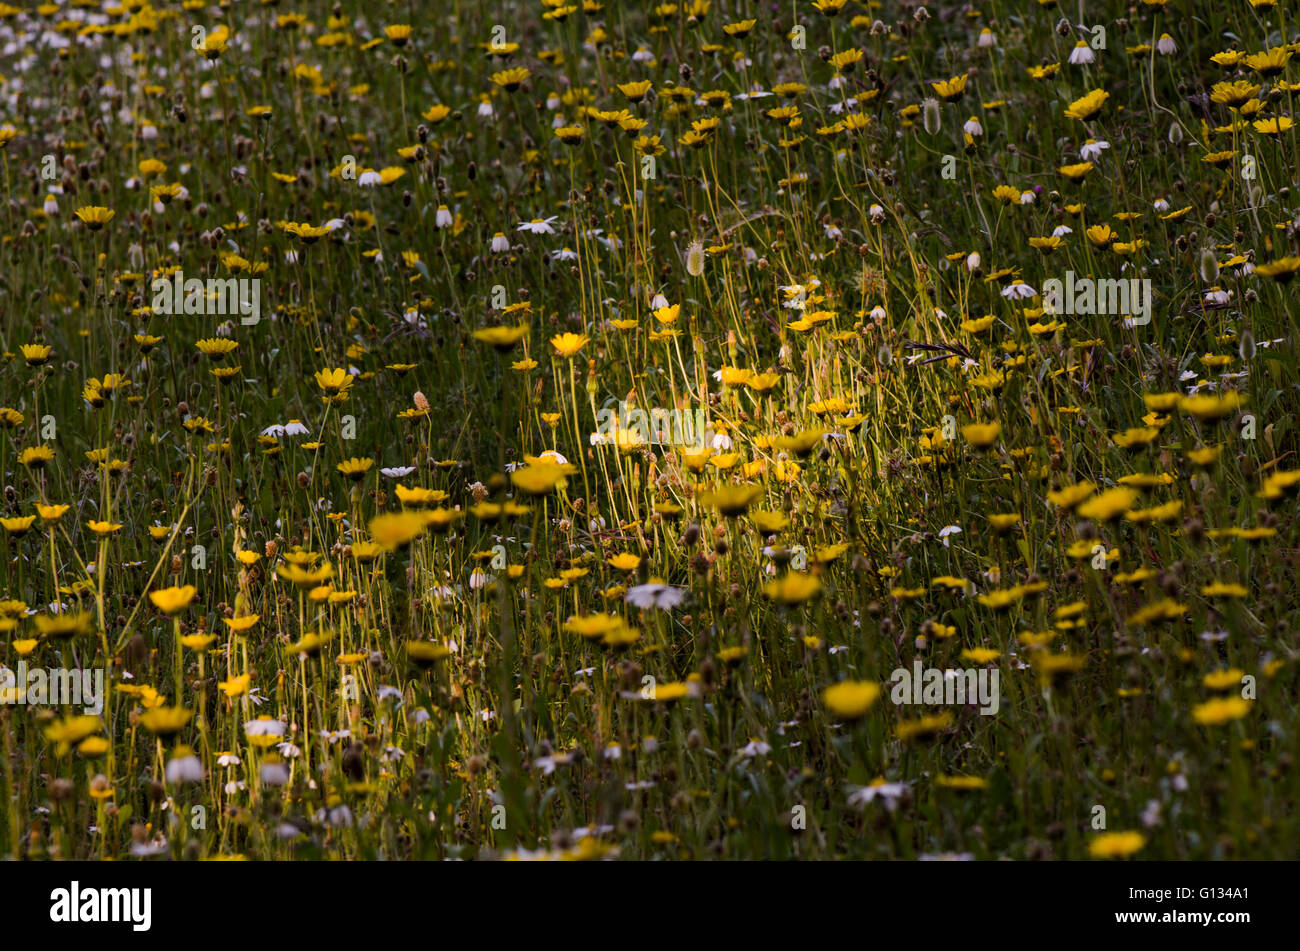 Strahl der Sonne fällt auf eine Wiese mit gelben Margeriten Blumen, Spanien. Stockfoto